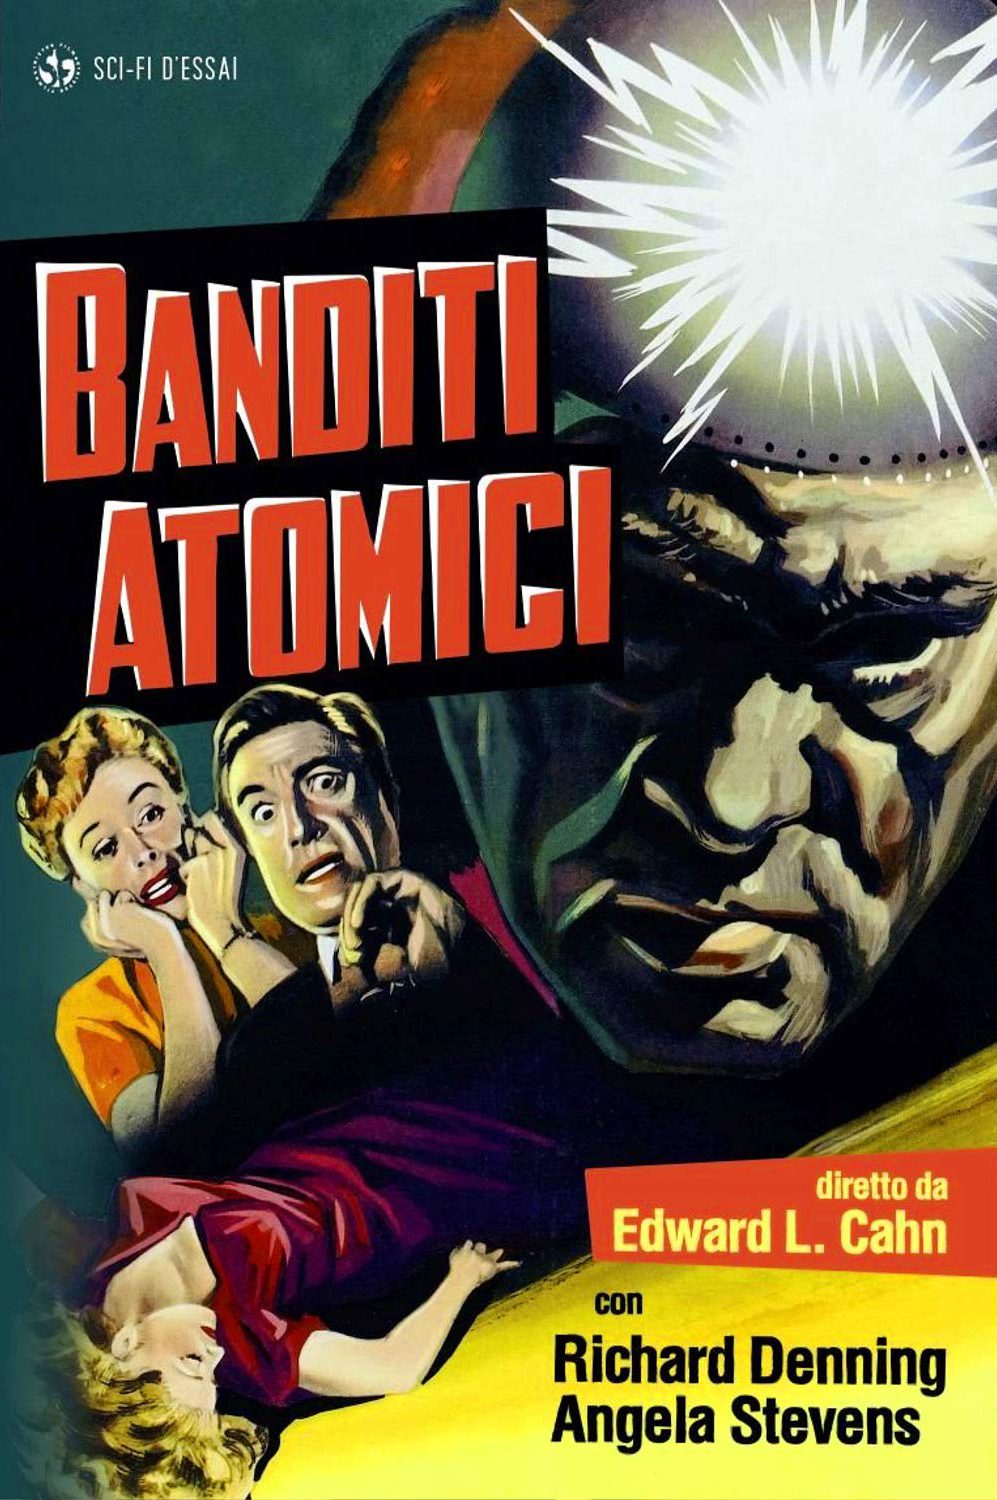 Banditi atomici [B/N] (1955)